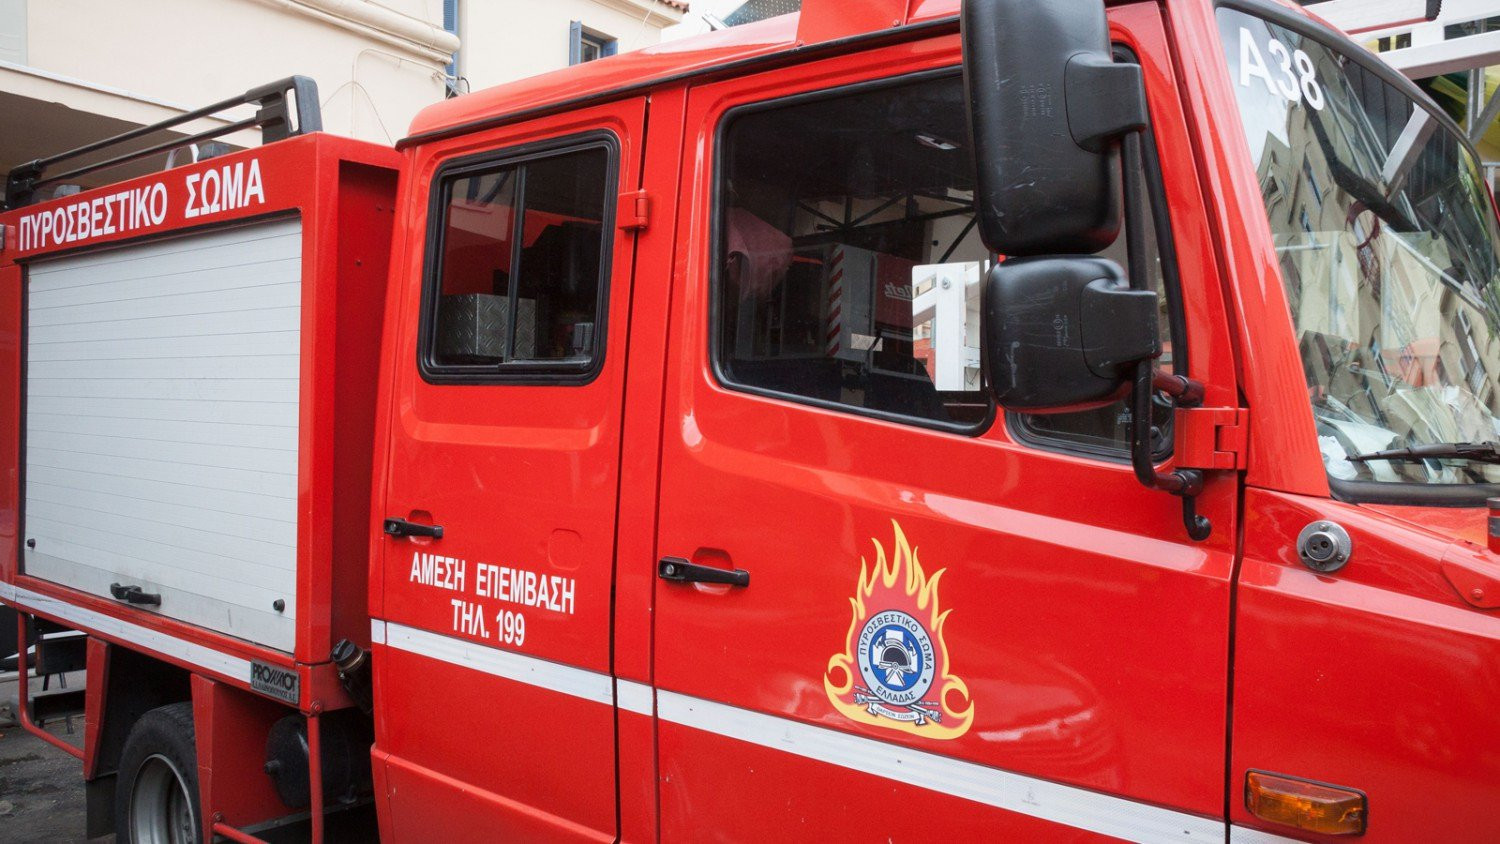 Αγρίνιο: Νεκρός εθελοντής πυροσβέστης μετά από φωτιά – Ένιωσε δυσφορία κατά τη διάρκεια της κατάσβεσης